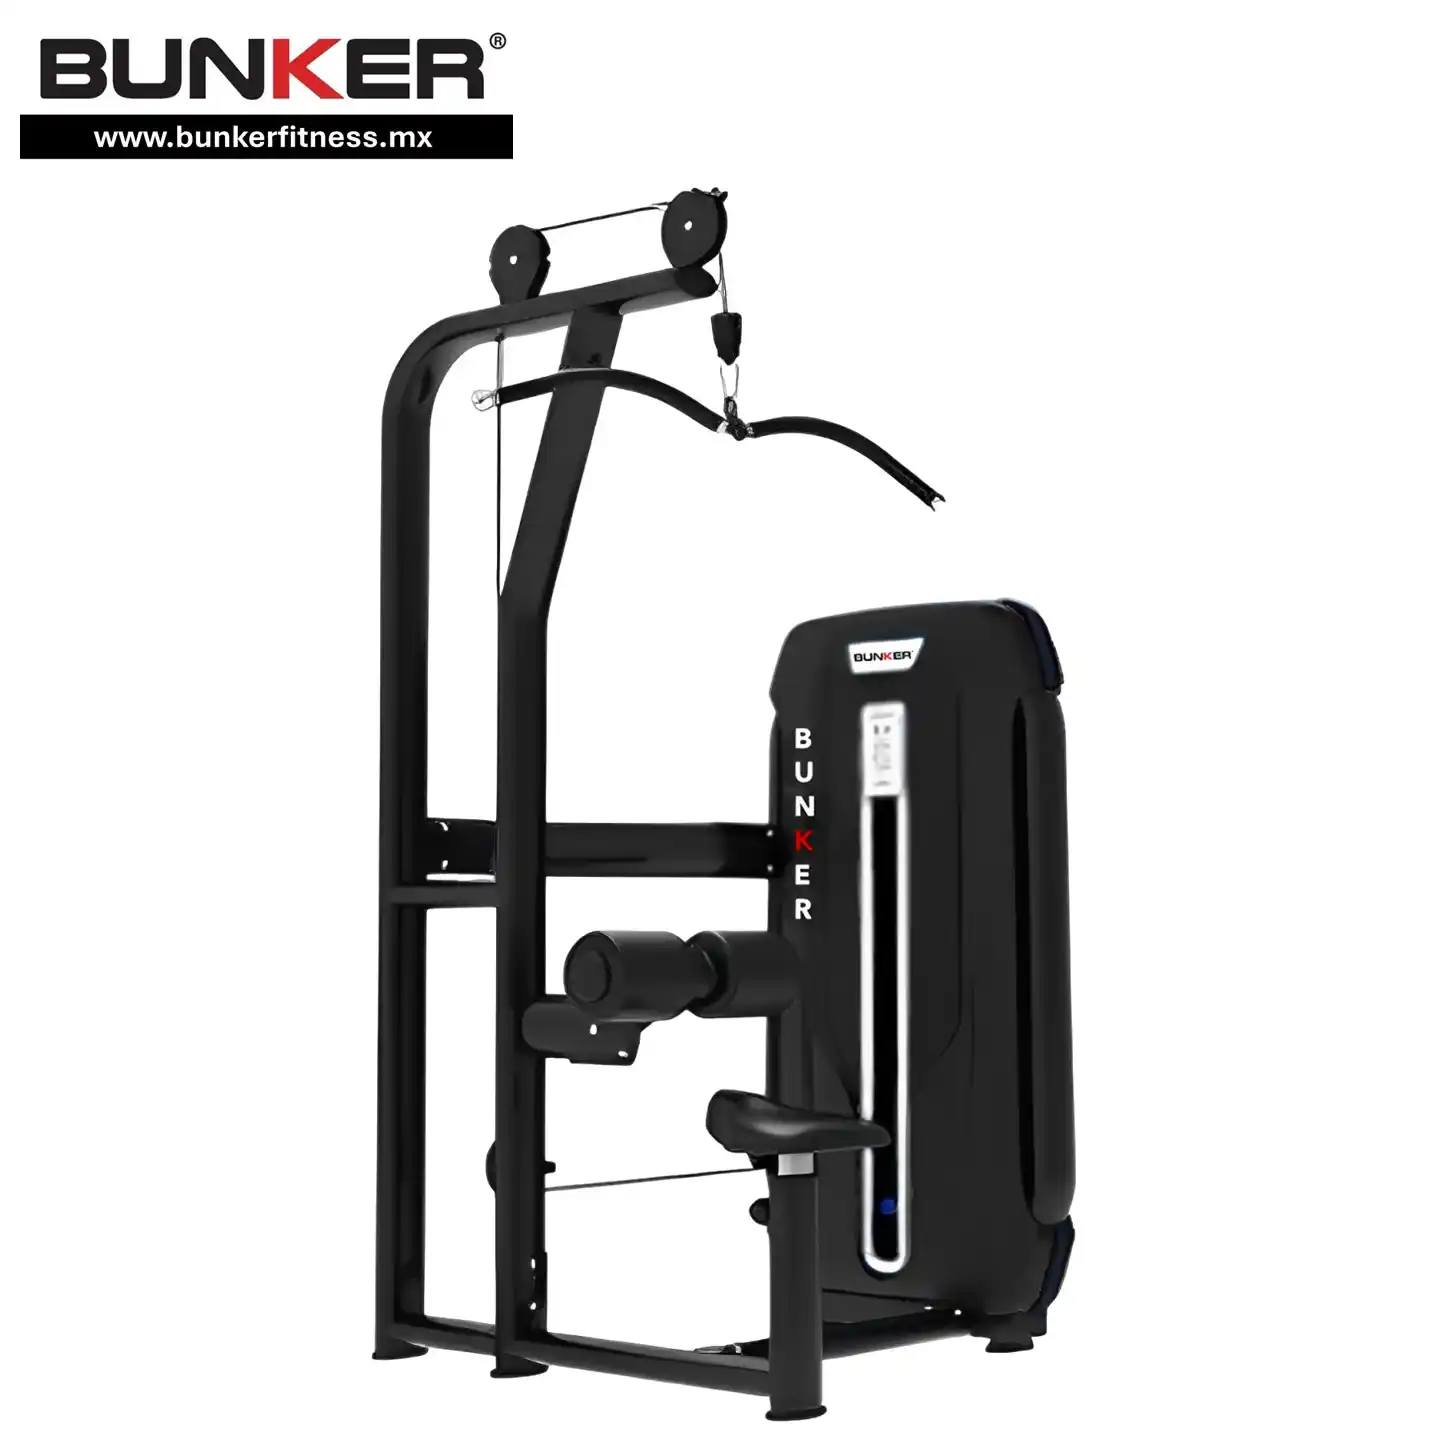 jalón de espalda bunker fitness para ejercicio en gym y gimnasio en casa bunker gym bunker fitness